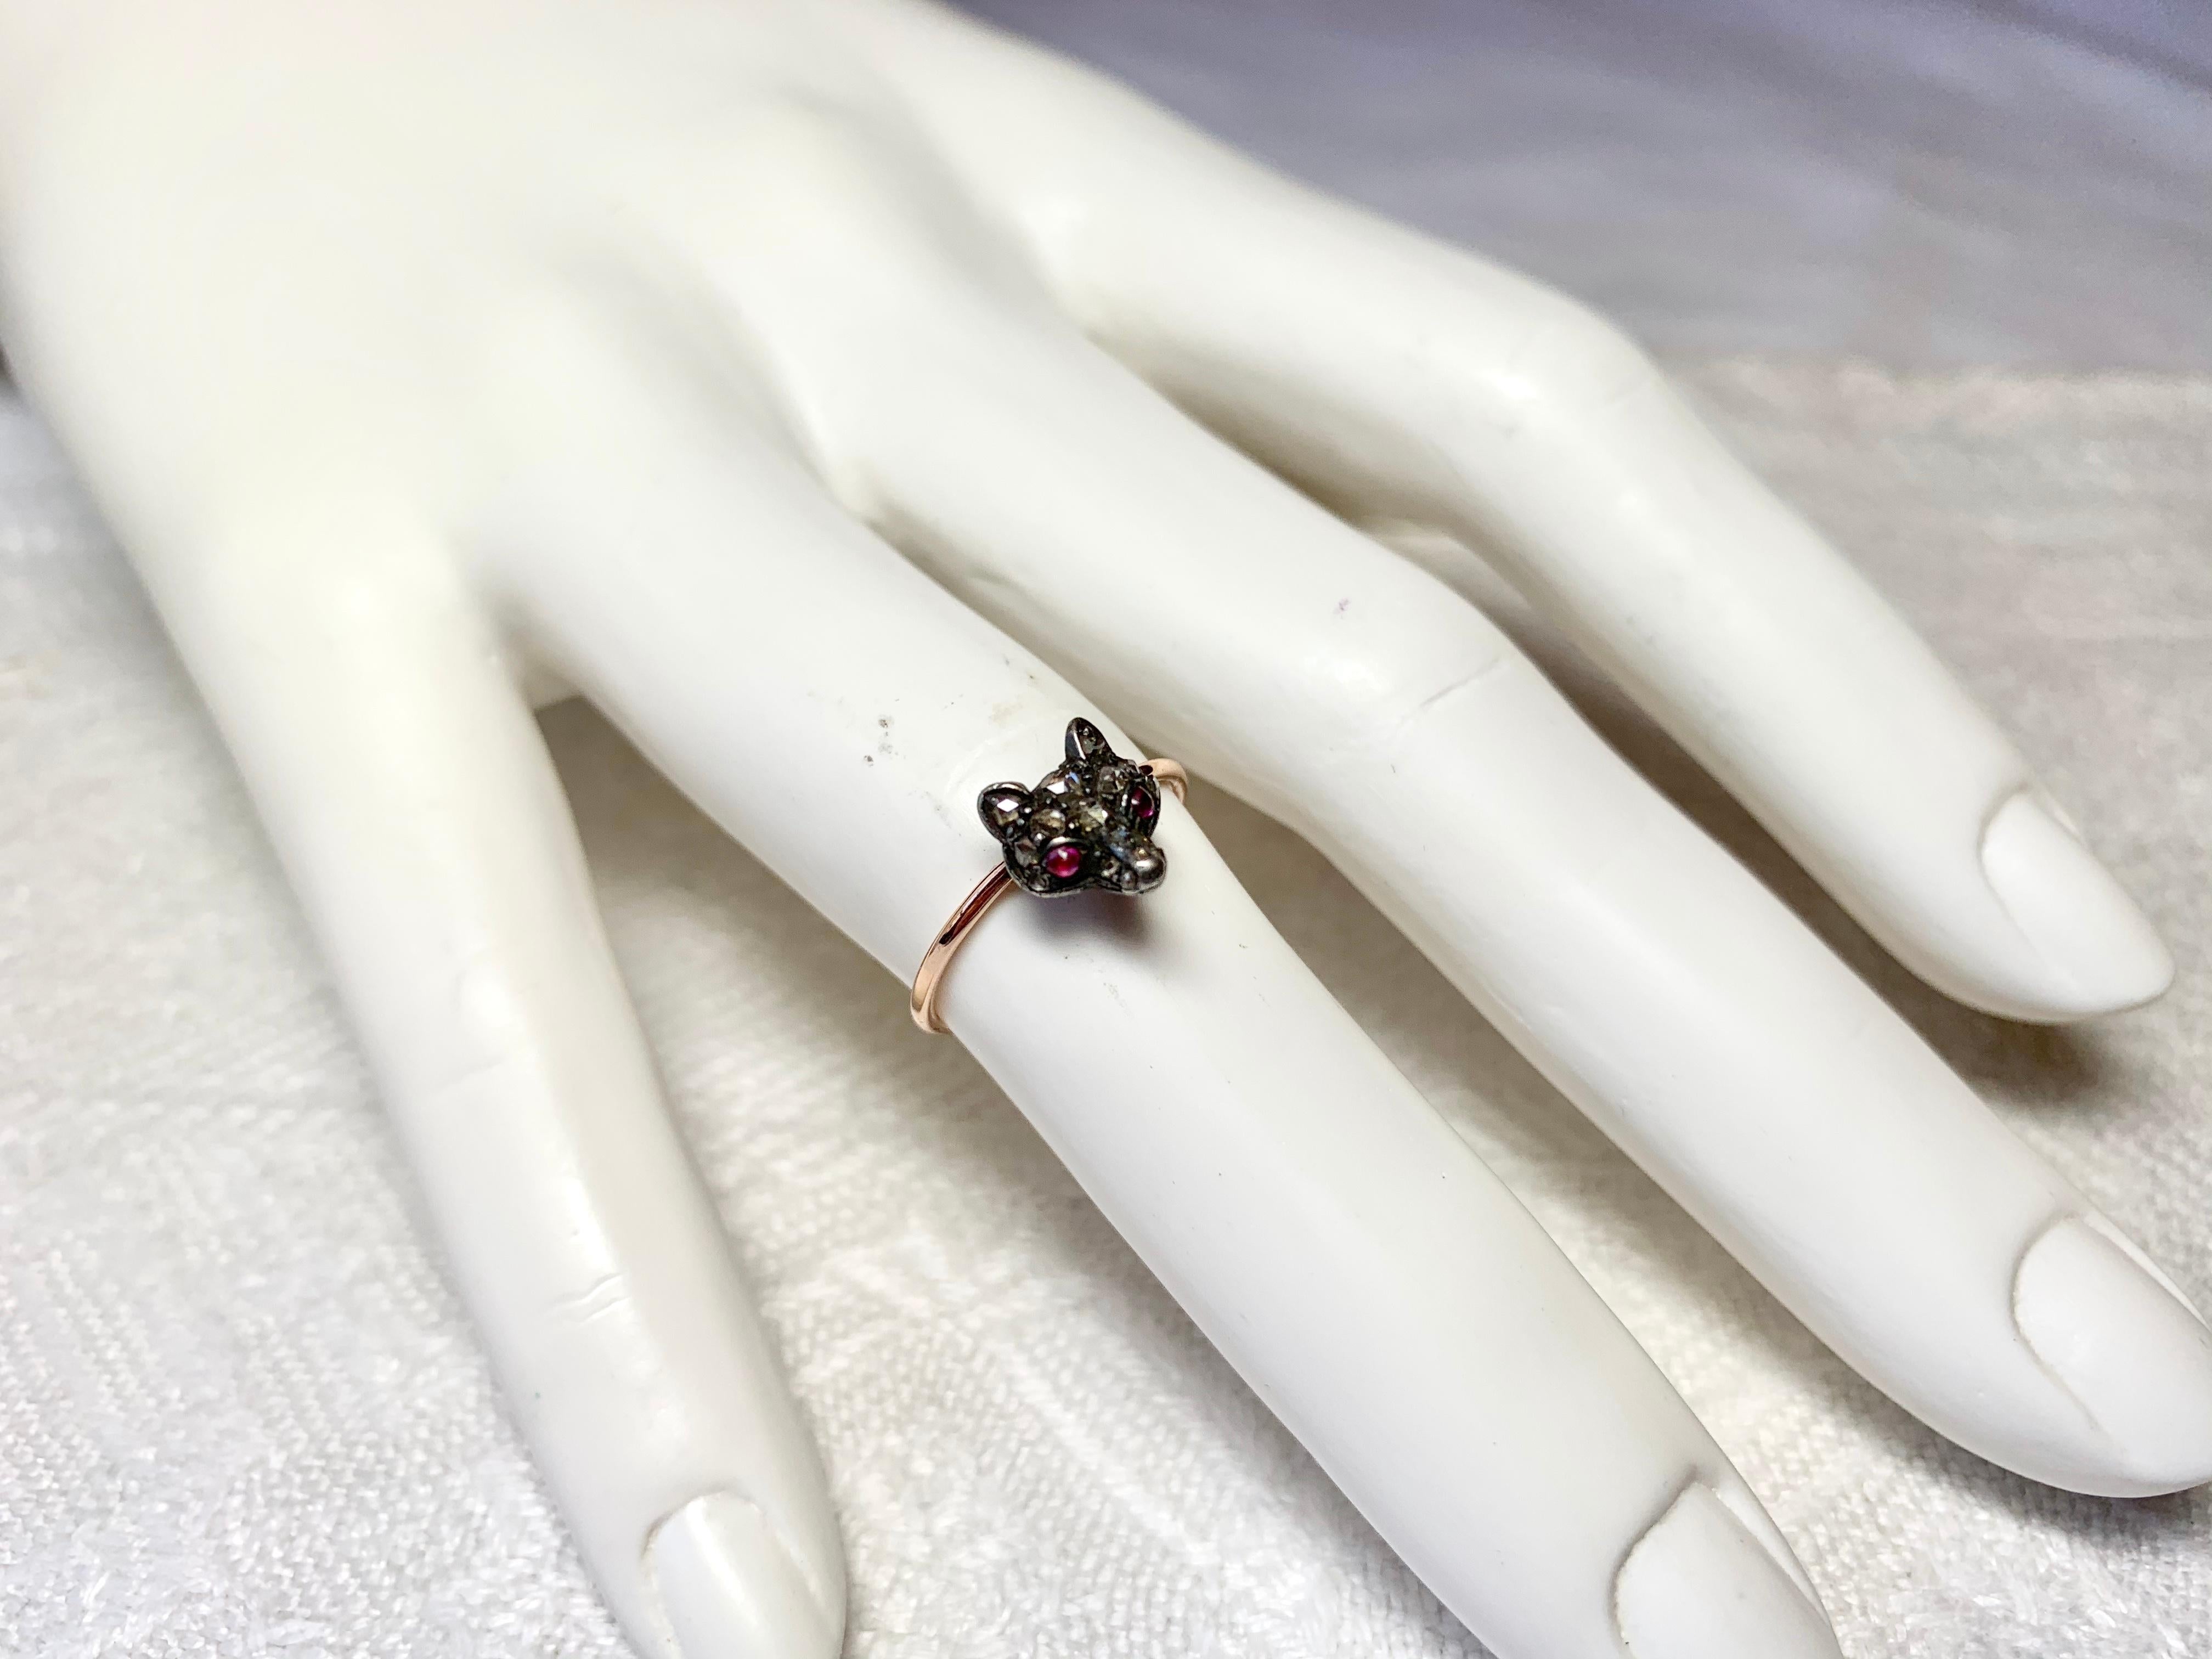 Dies ist ein antiker viktorianischer - edwardianischer Ring mit einem wunderschönen Fuchskopf, besetzt mit Diamanten im Rosenschliff und Rubinaugen.  Die Juwelen sind in Silber auf Gold gefasst, wie es in dieser Zeit üblich war.  Dies ist eine sehr